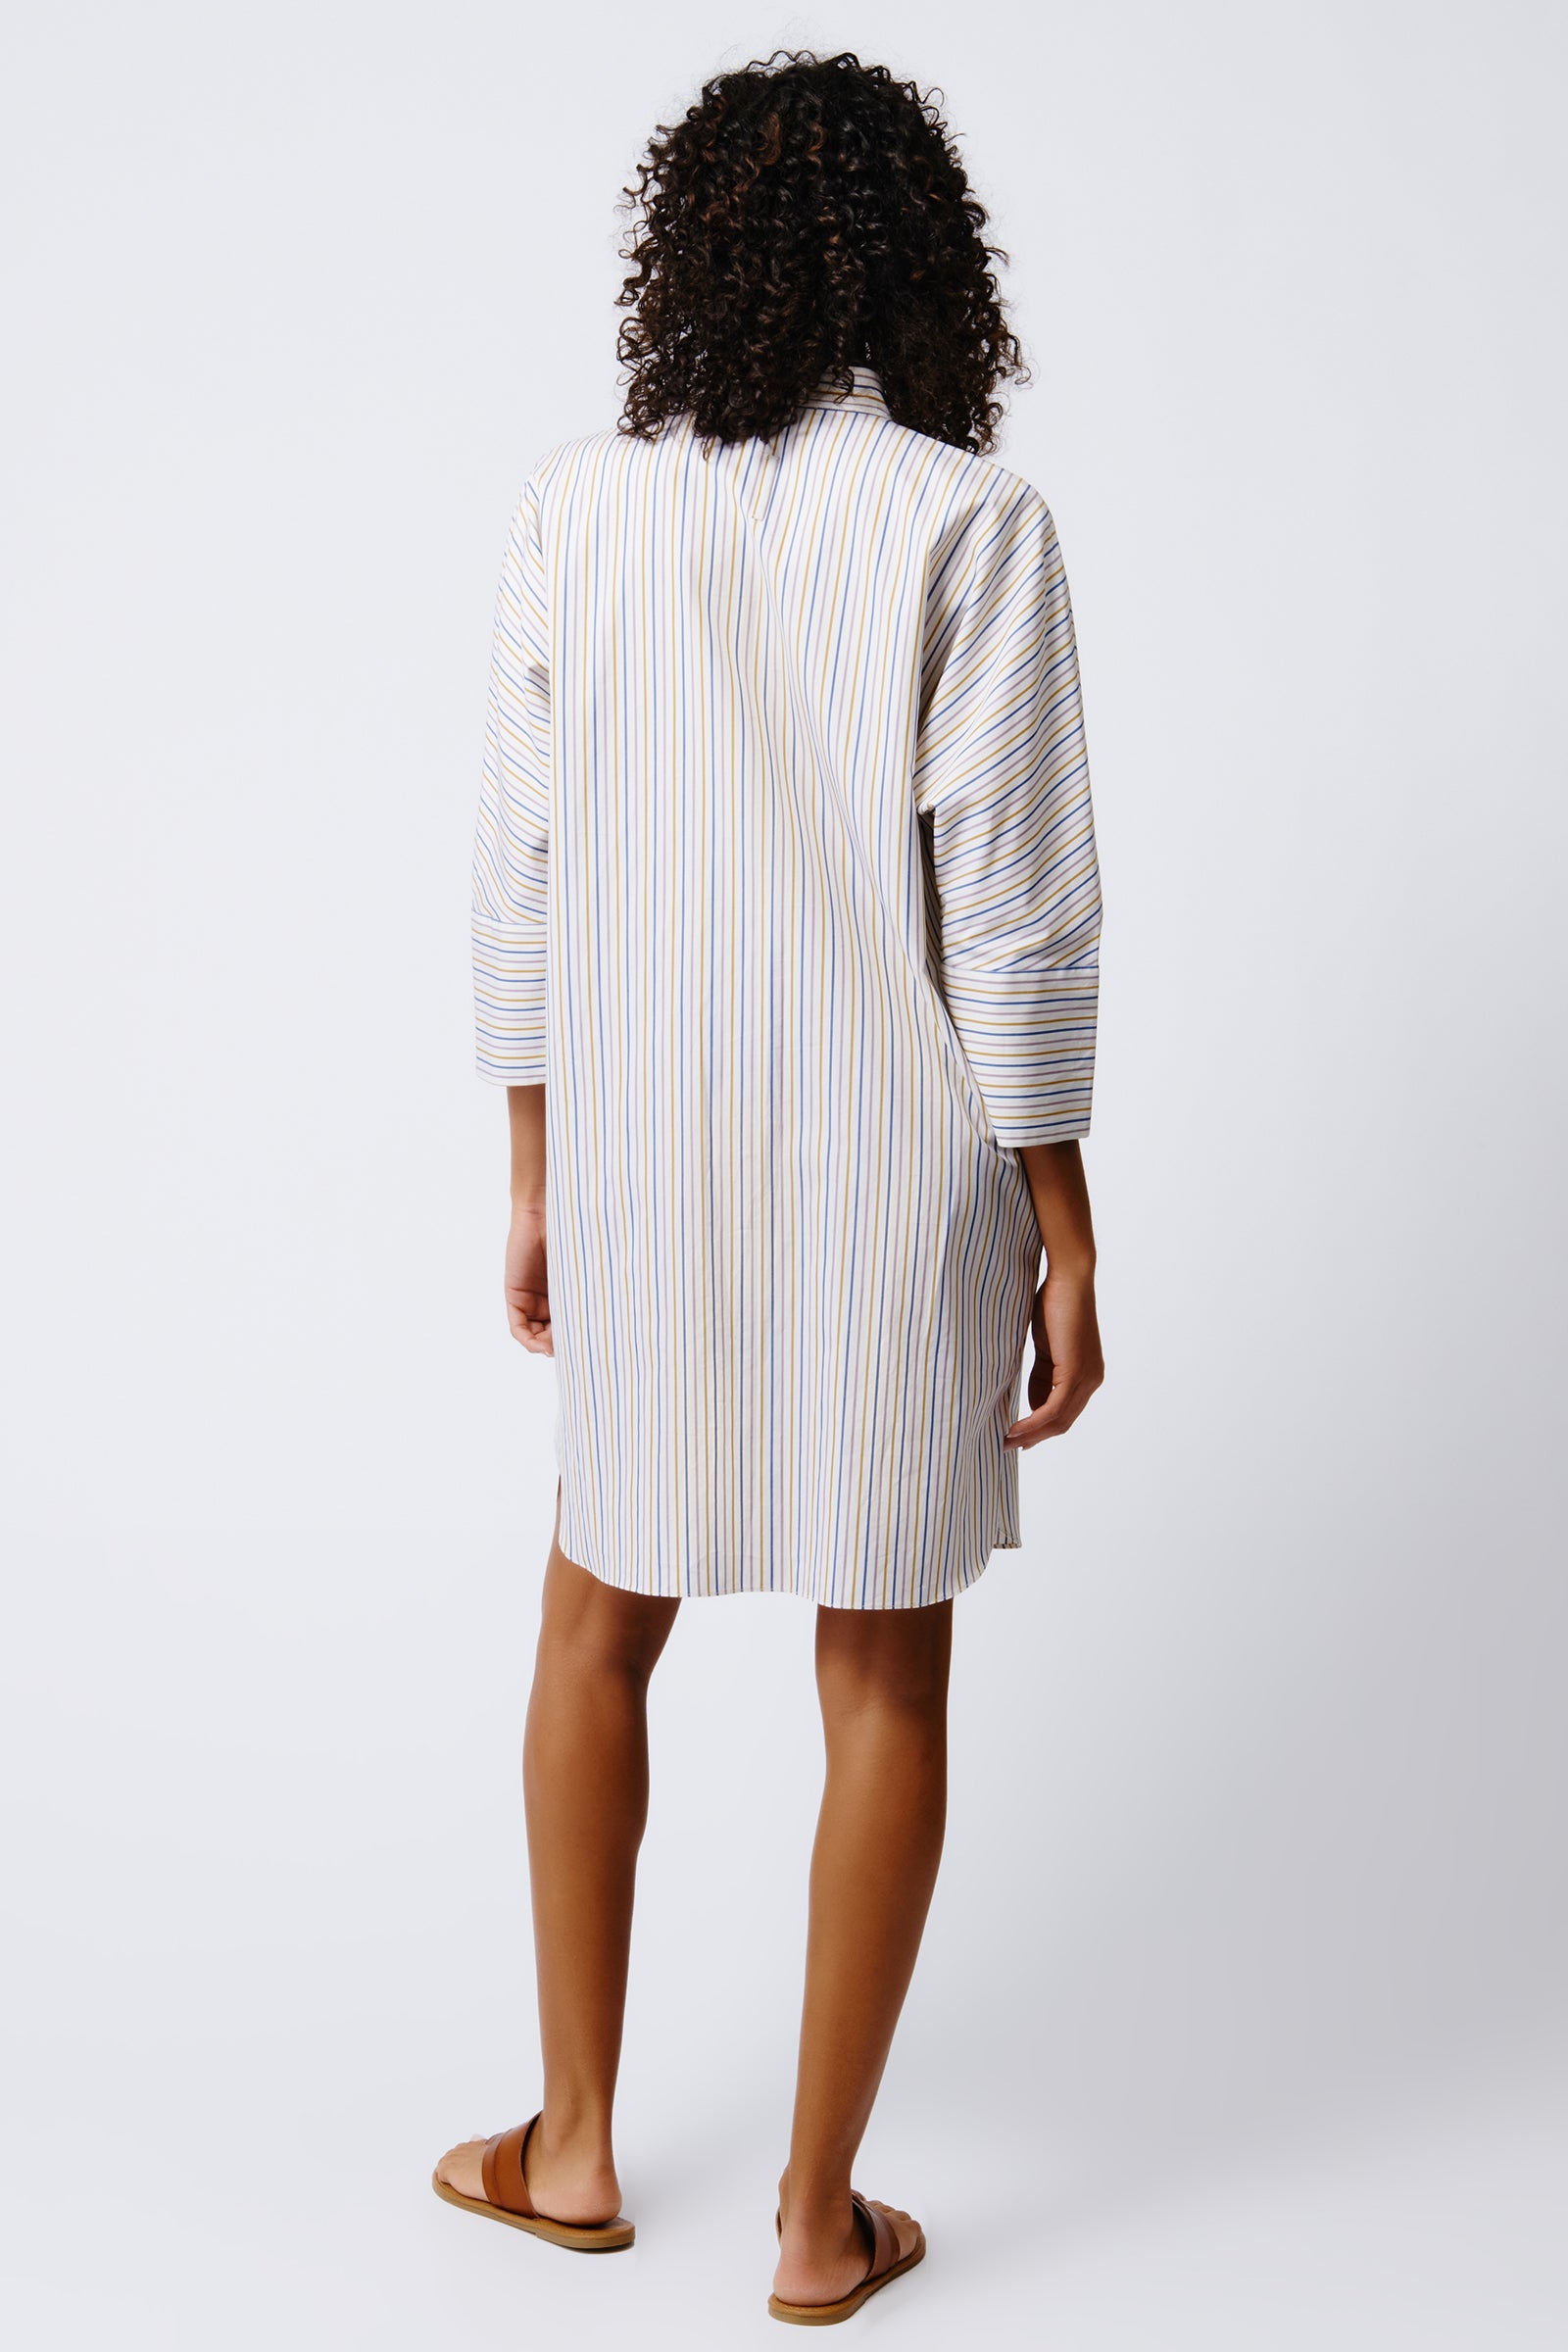 Kal Rieman June Shirt Dress in Multi Stripe on Model Full Back View